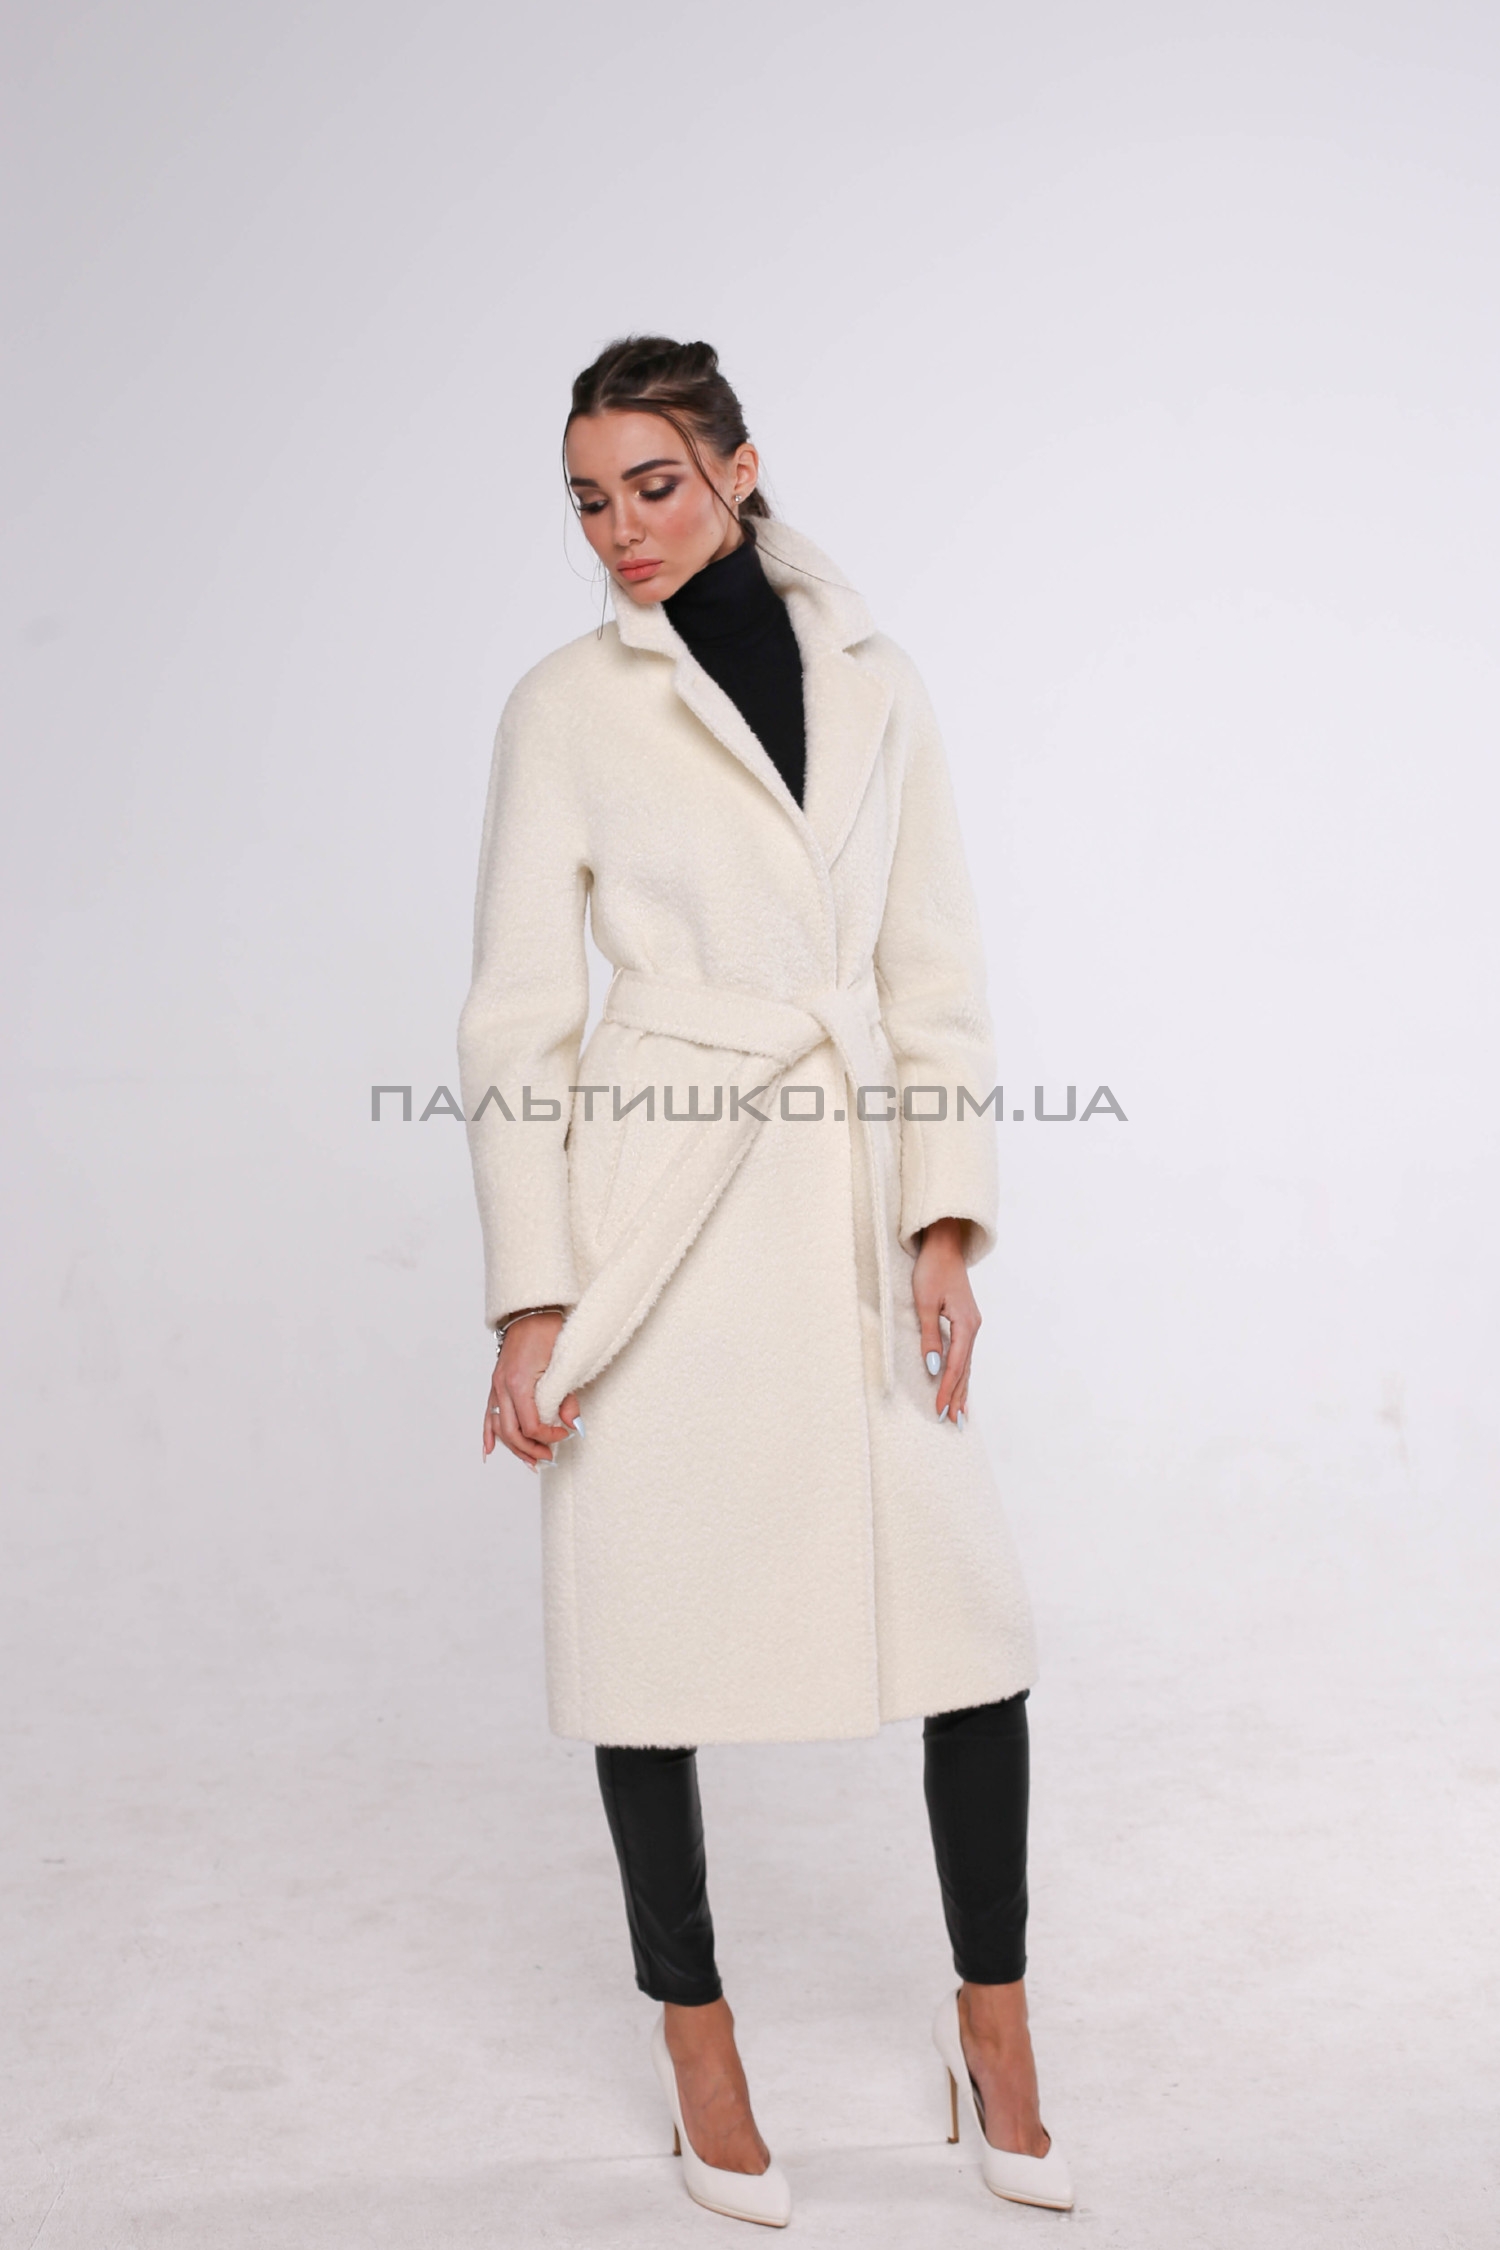  Жіноче пальто №102